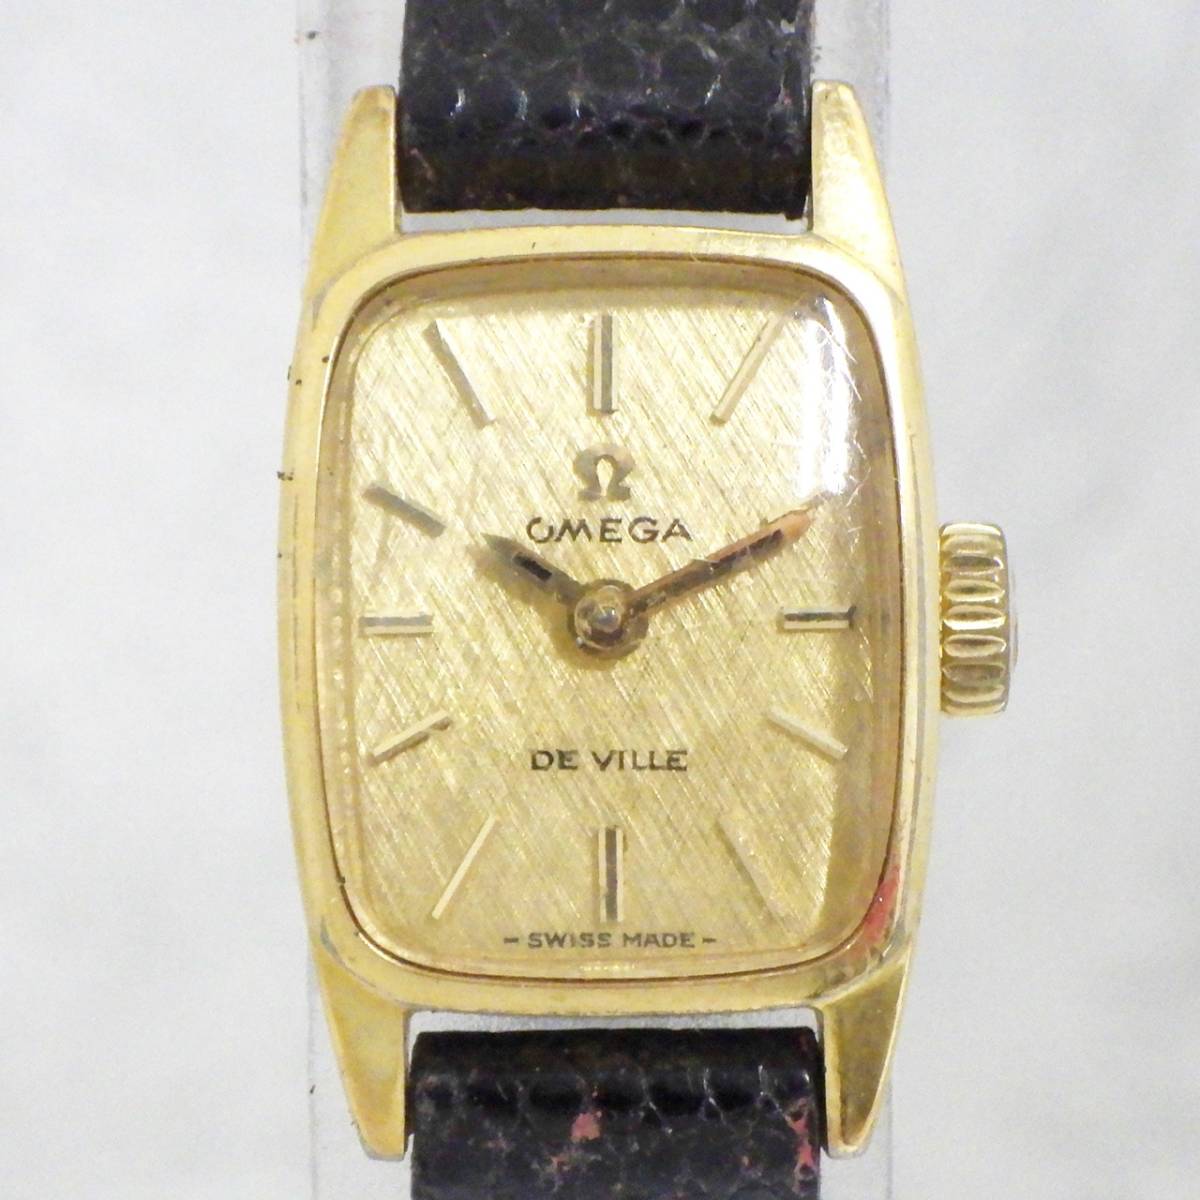 01 00-588930-96 [Y] OMEGA オメガ DE VILLE デビル 手巻き 腕時計 レディース ゴールドカラー 札00_画像1